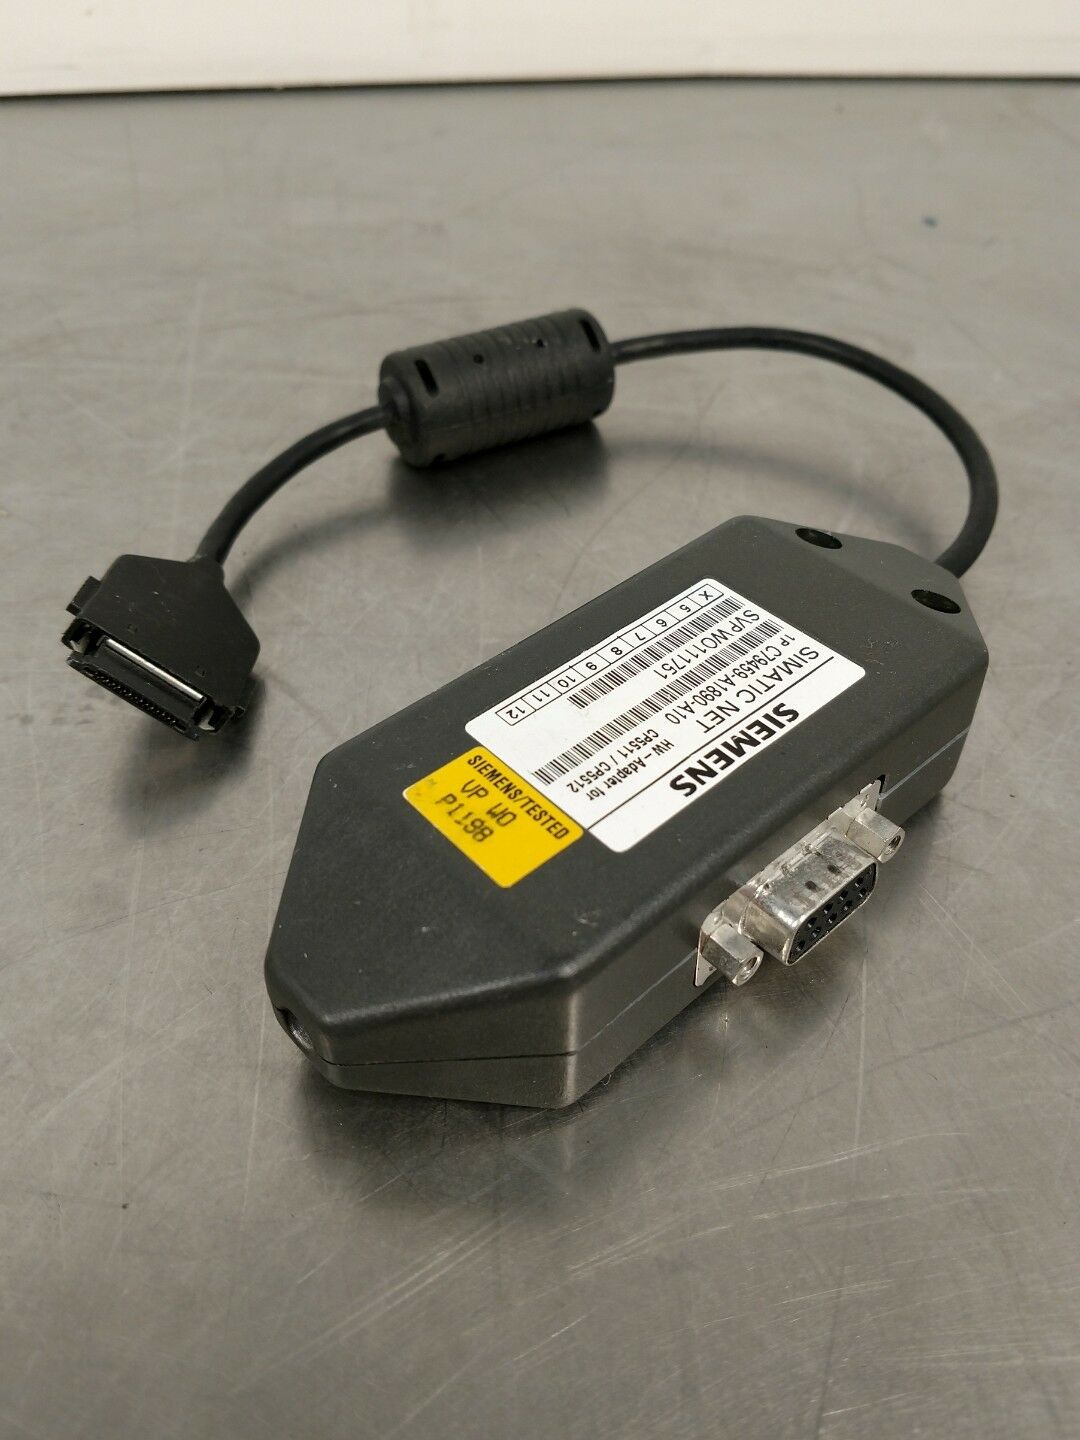 Siemens 1P C79459-A1890-A10 Simatic NET Adapter w/ CP 5511/CP 5512 Card 3D